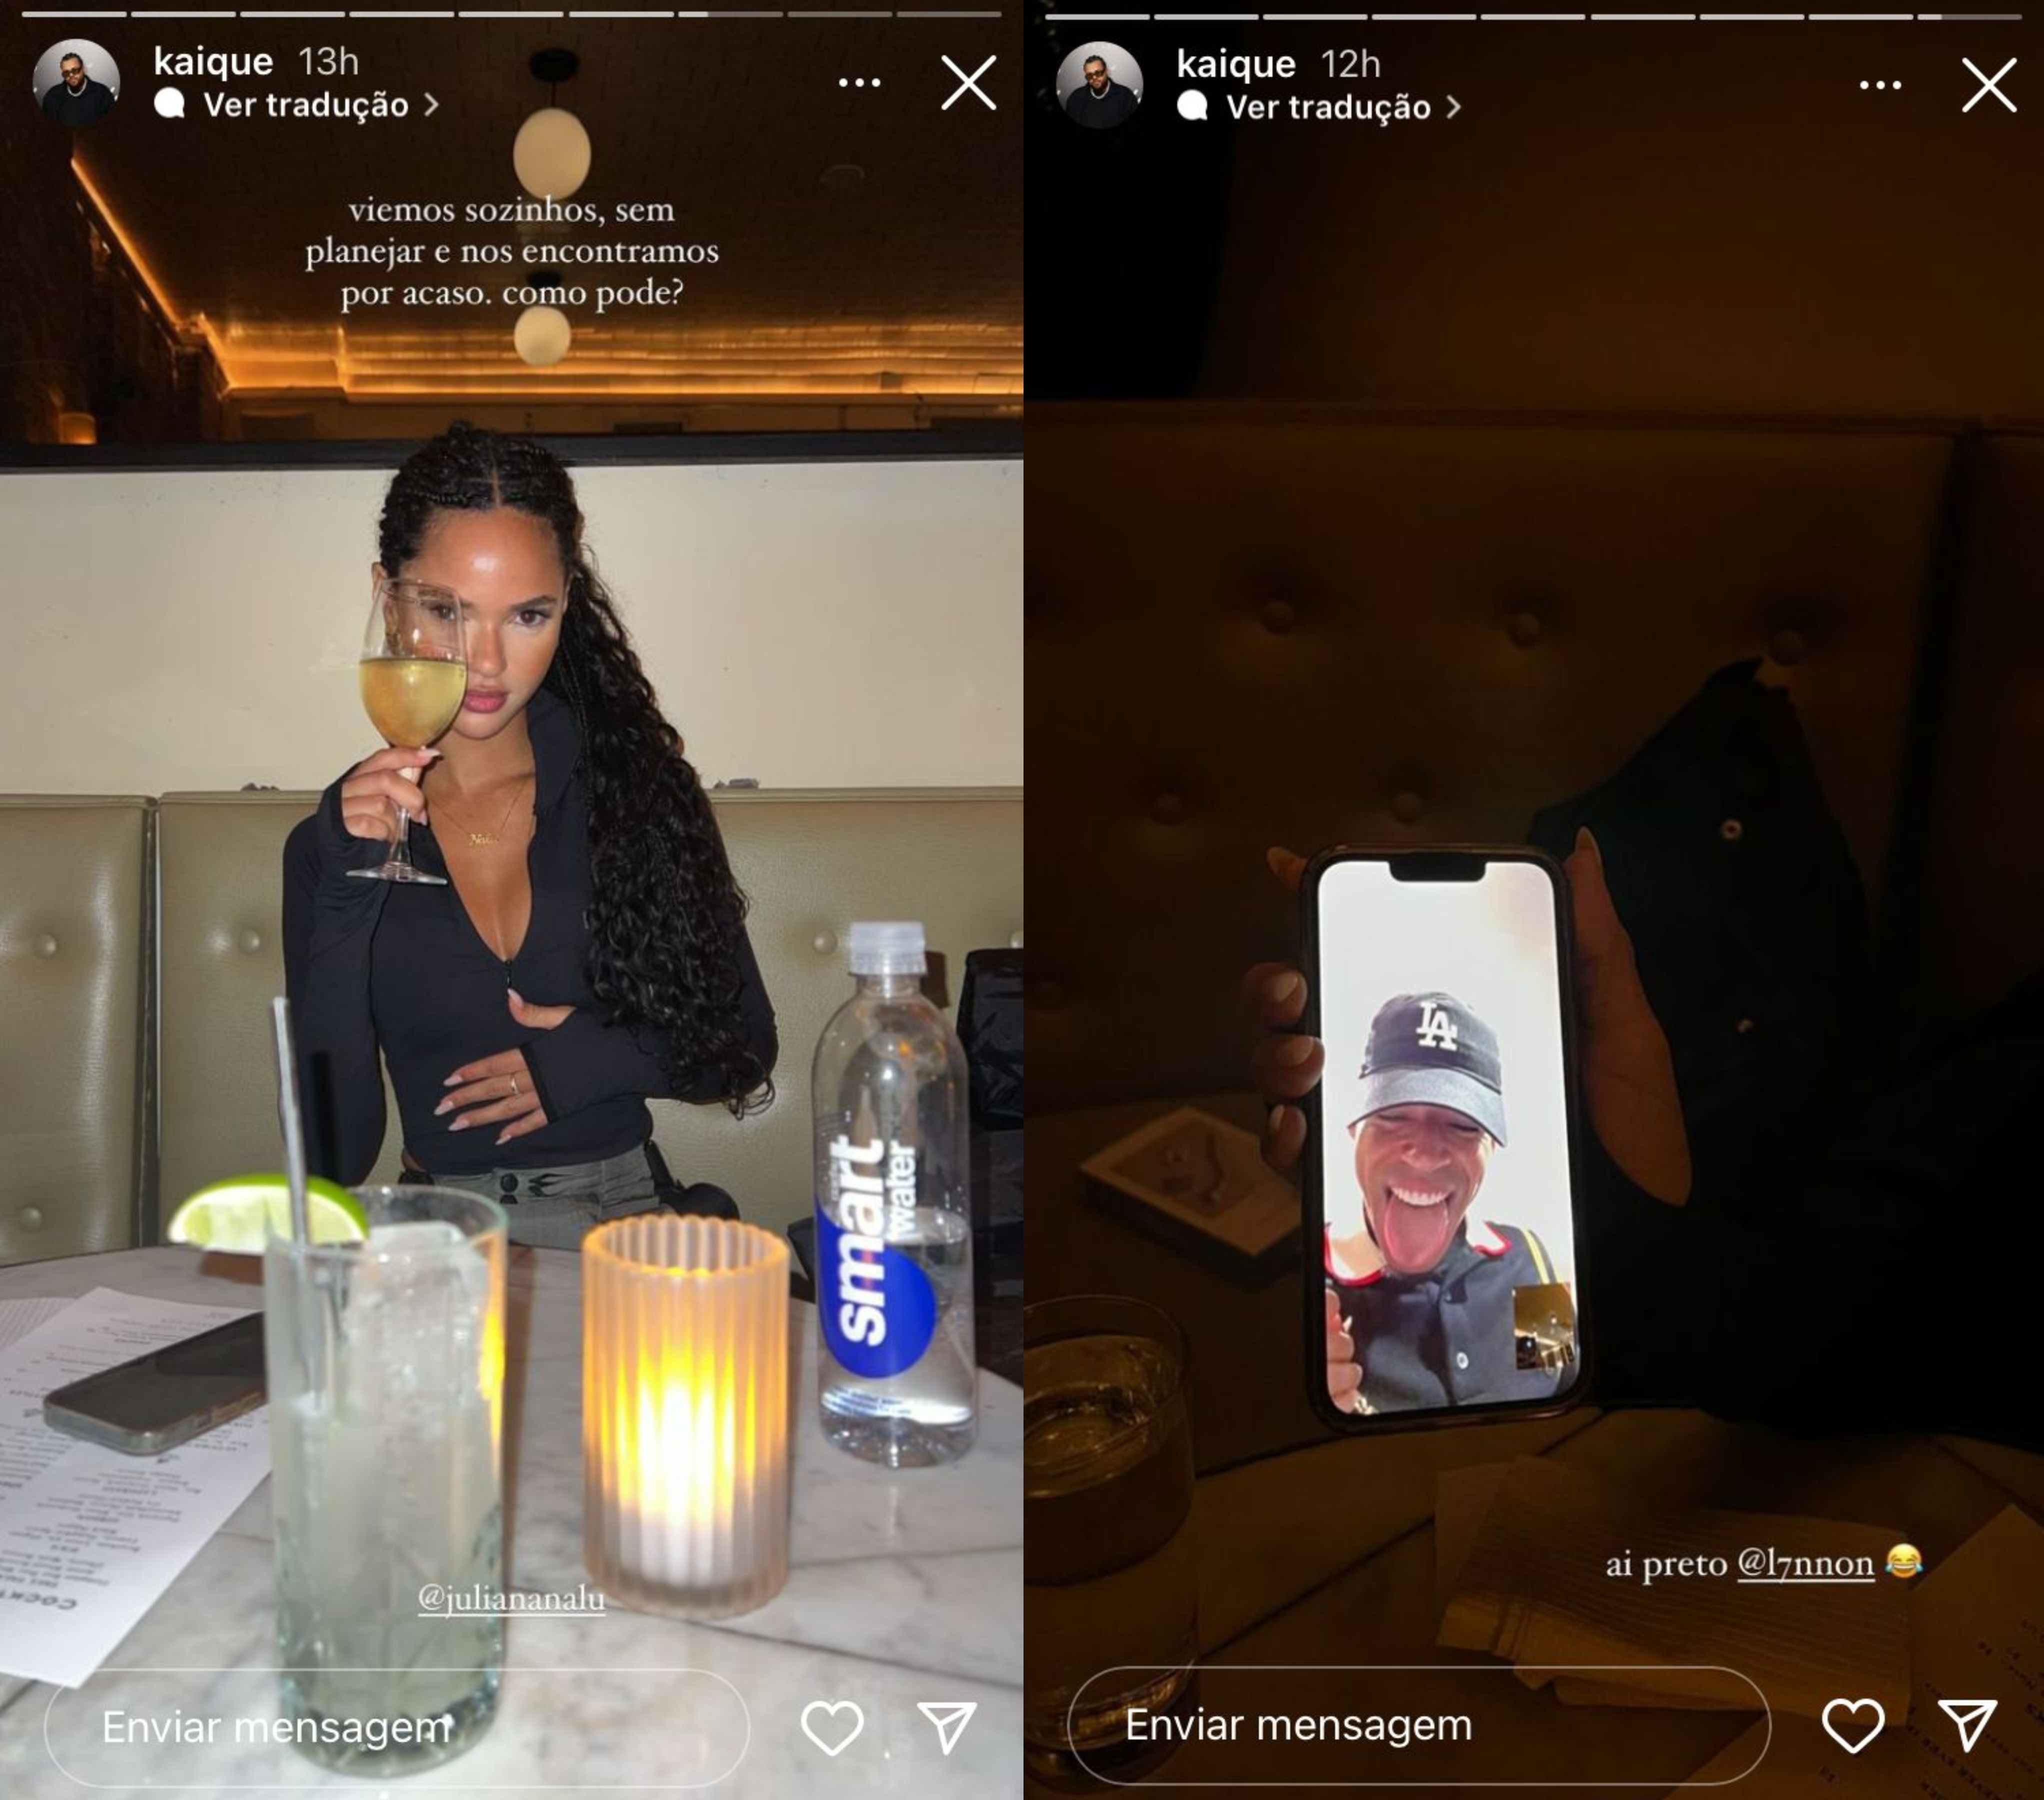 Dois Stories do instagram. No primeiro, a modelo Juliana Nalú com um drink, sentada em uma mesa de restaurante. No segundo, uma chamada de vídeo com o cantor L7nnon